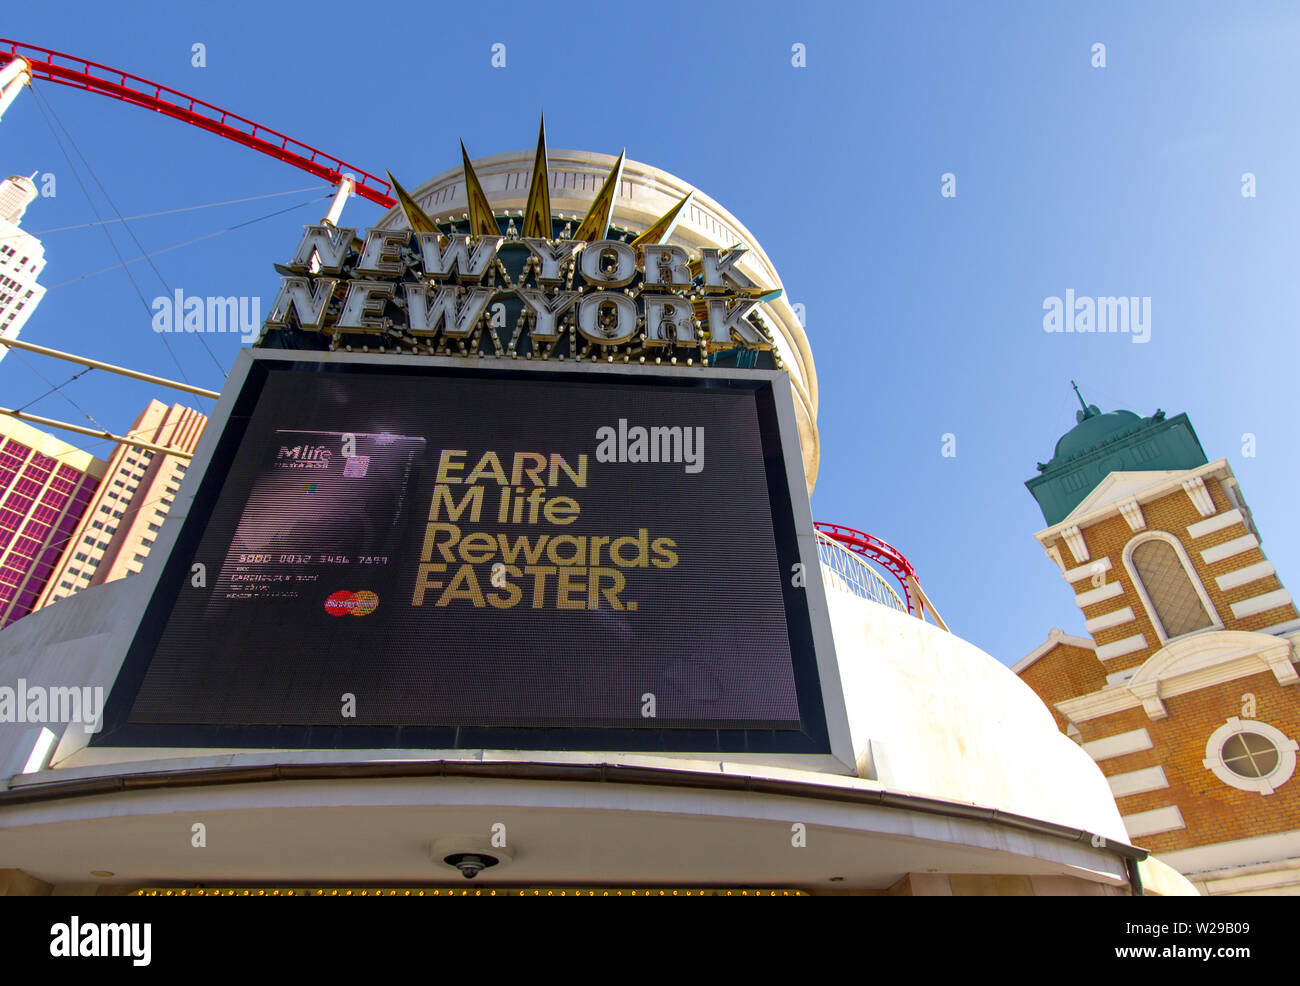 Las Vegas, Nevada, USA - 6 mai 2019 : l'extérieur de la New York New York casino and Resort avec un rectangle de la publicité La Vie M Rewards. Banque D'Images